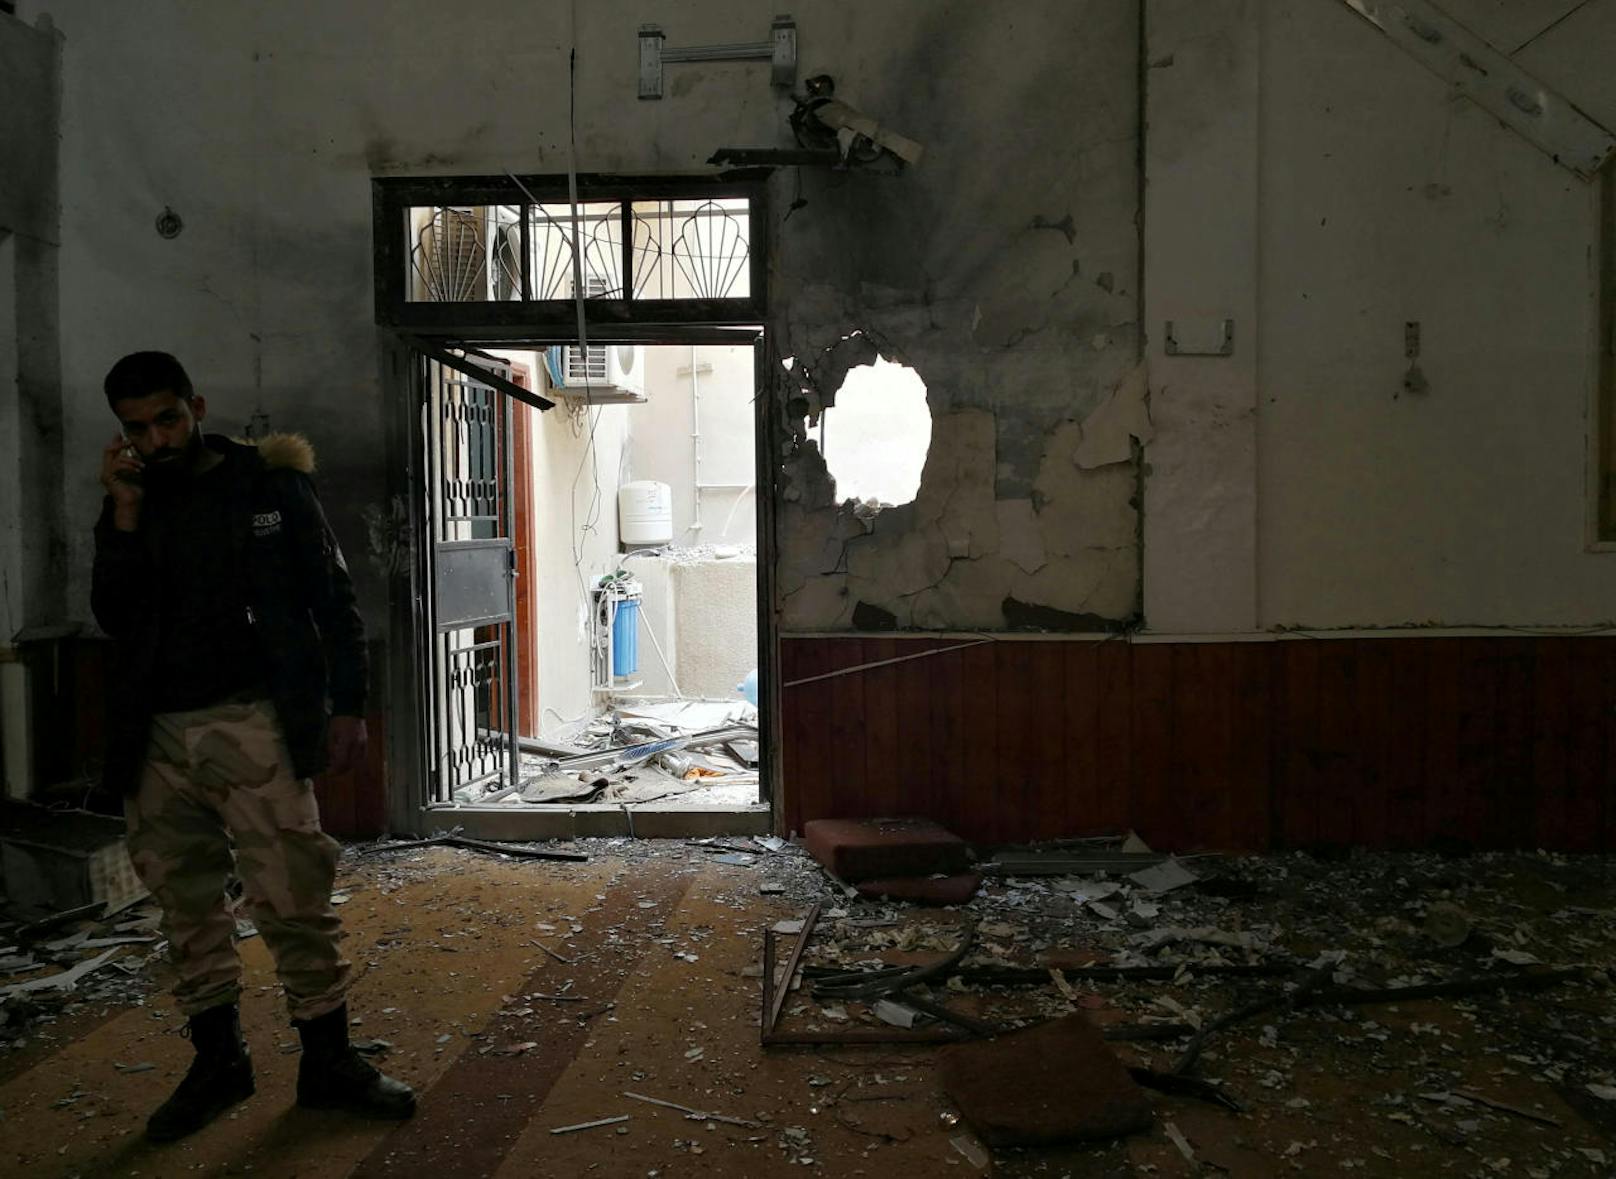 Ein libyscher Soldat spricht am Telefon im Inneren der zerbombten Moschee.